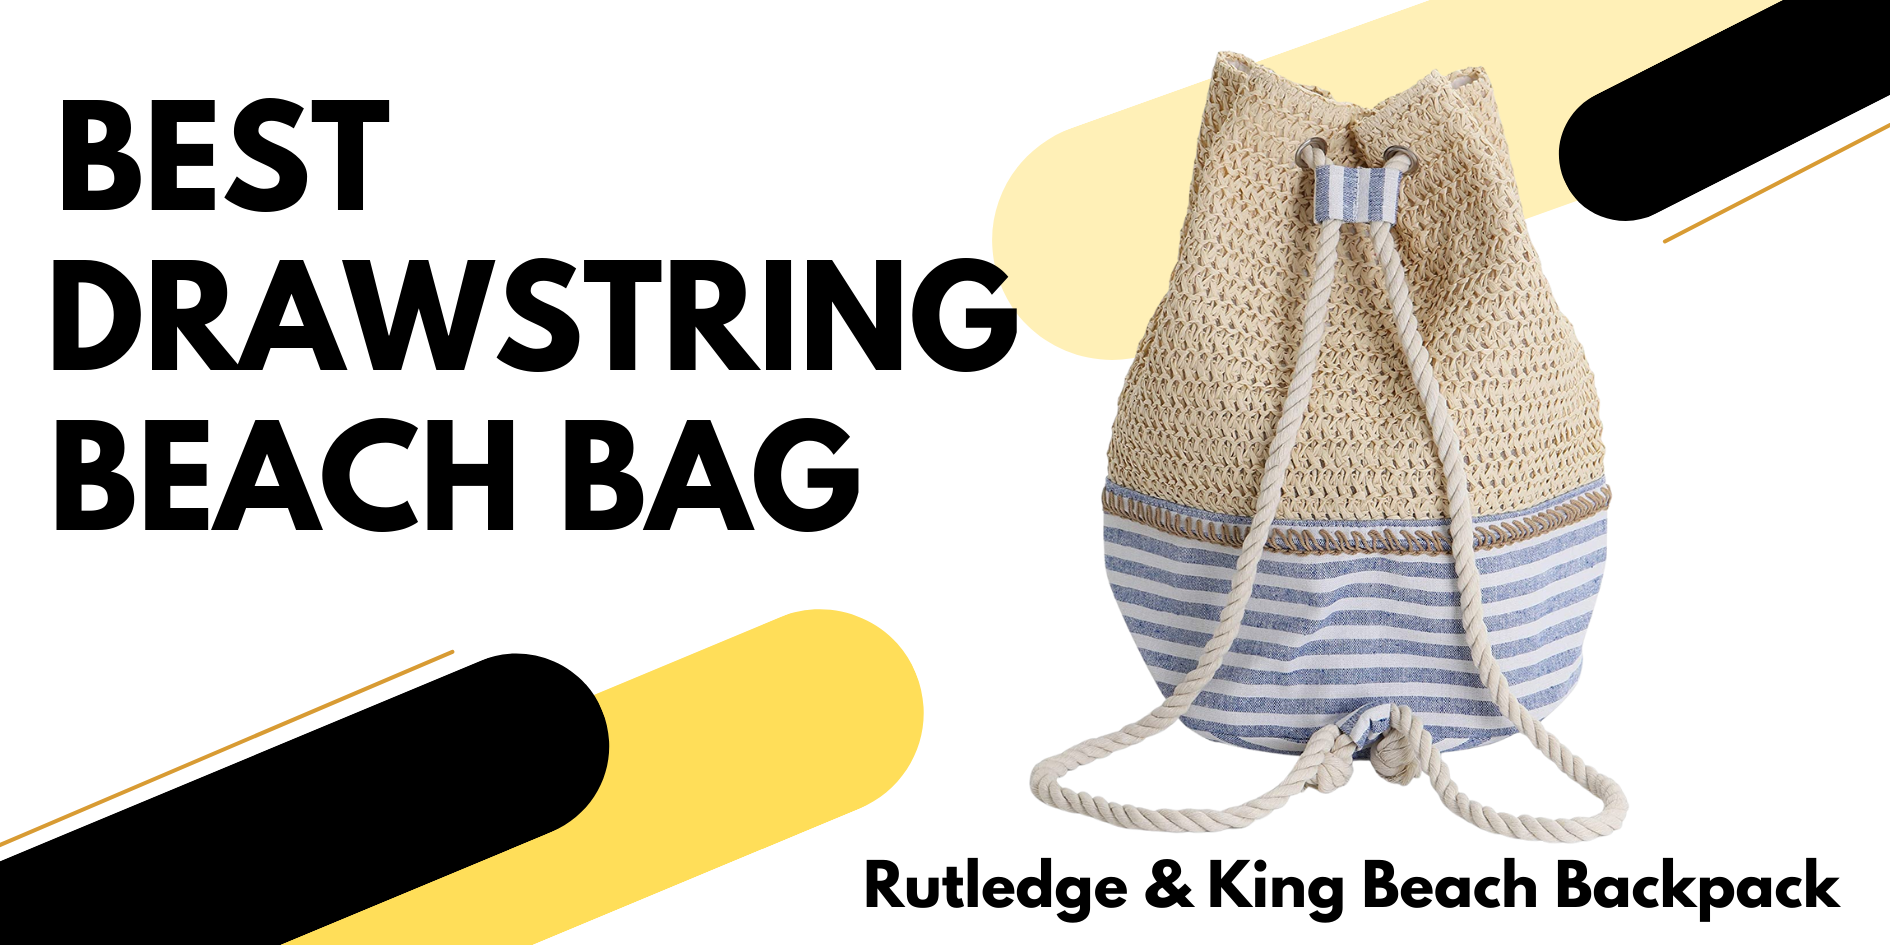 rutledge and king beach backpack